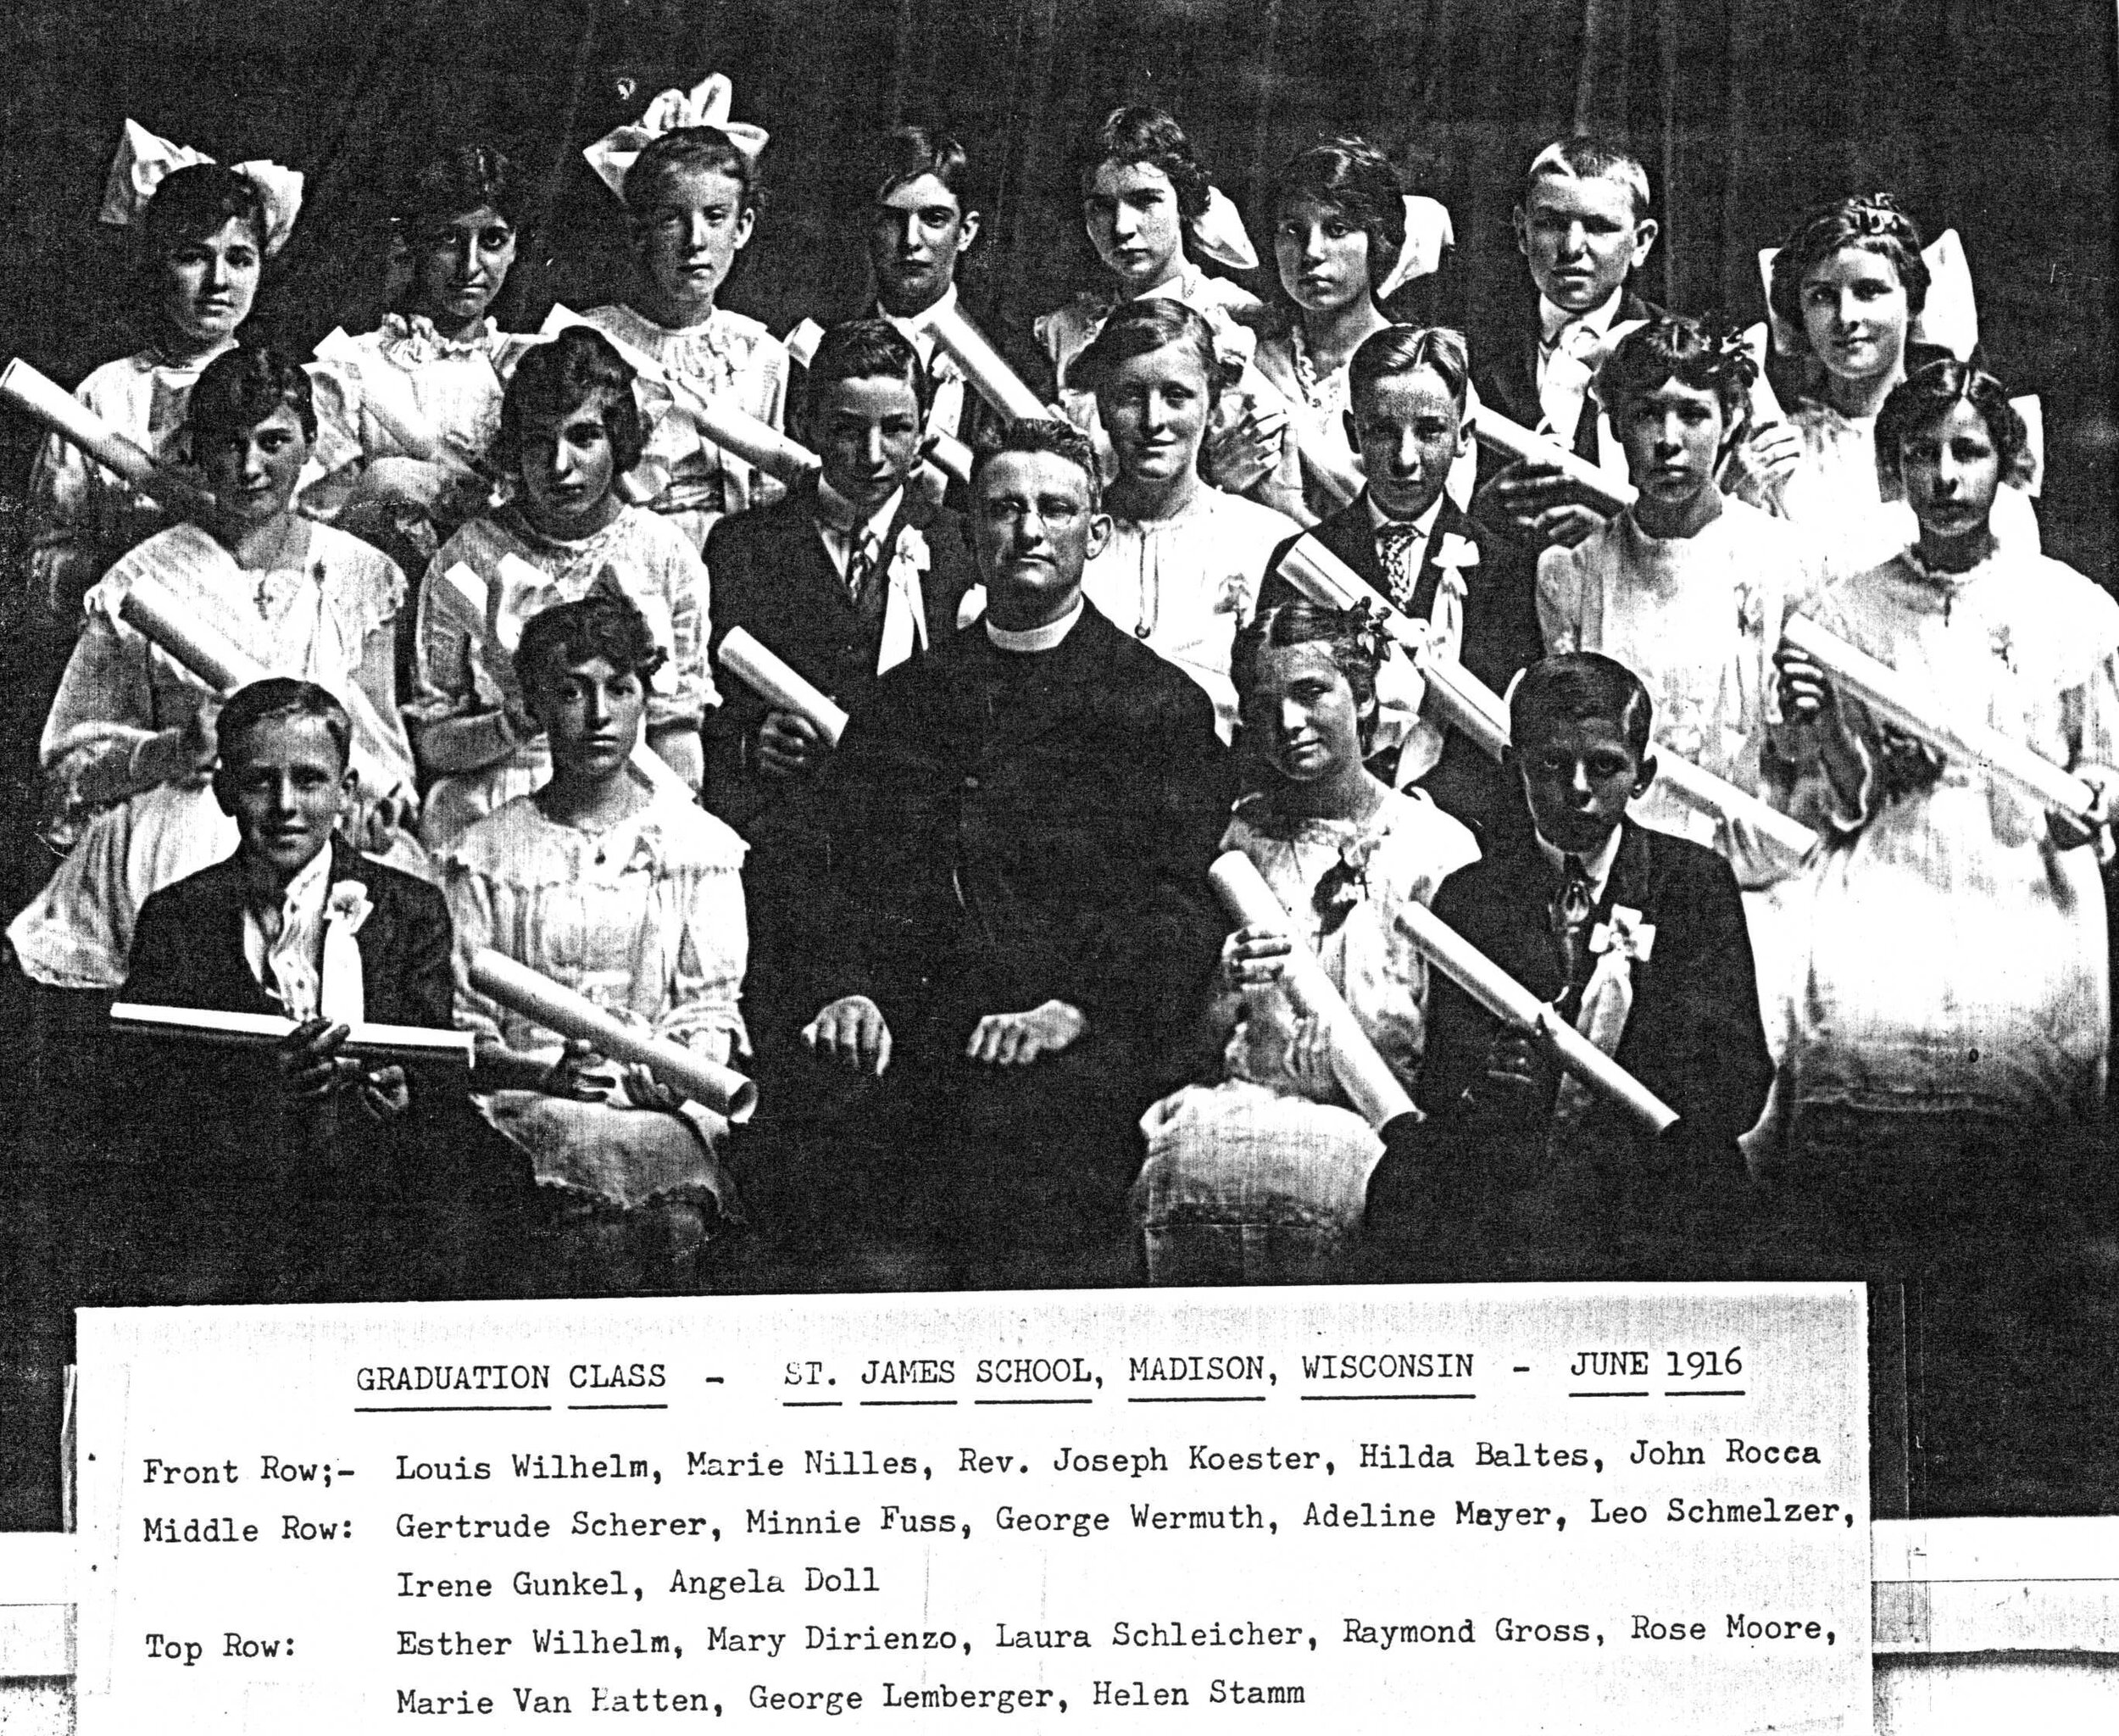 8th Grade in 1916